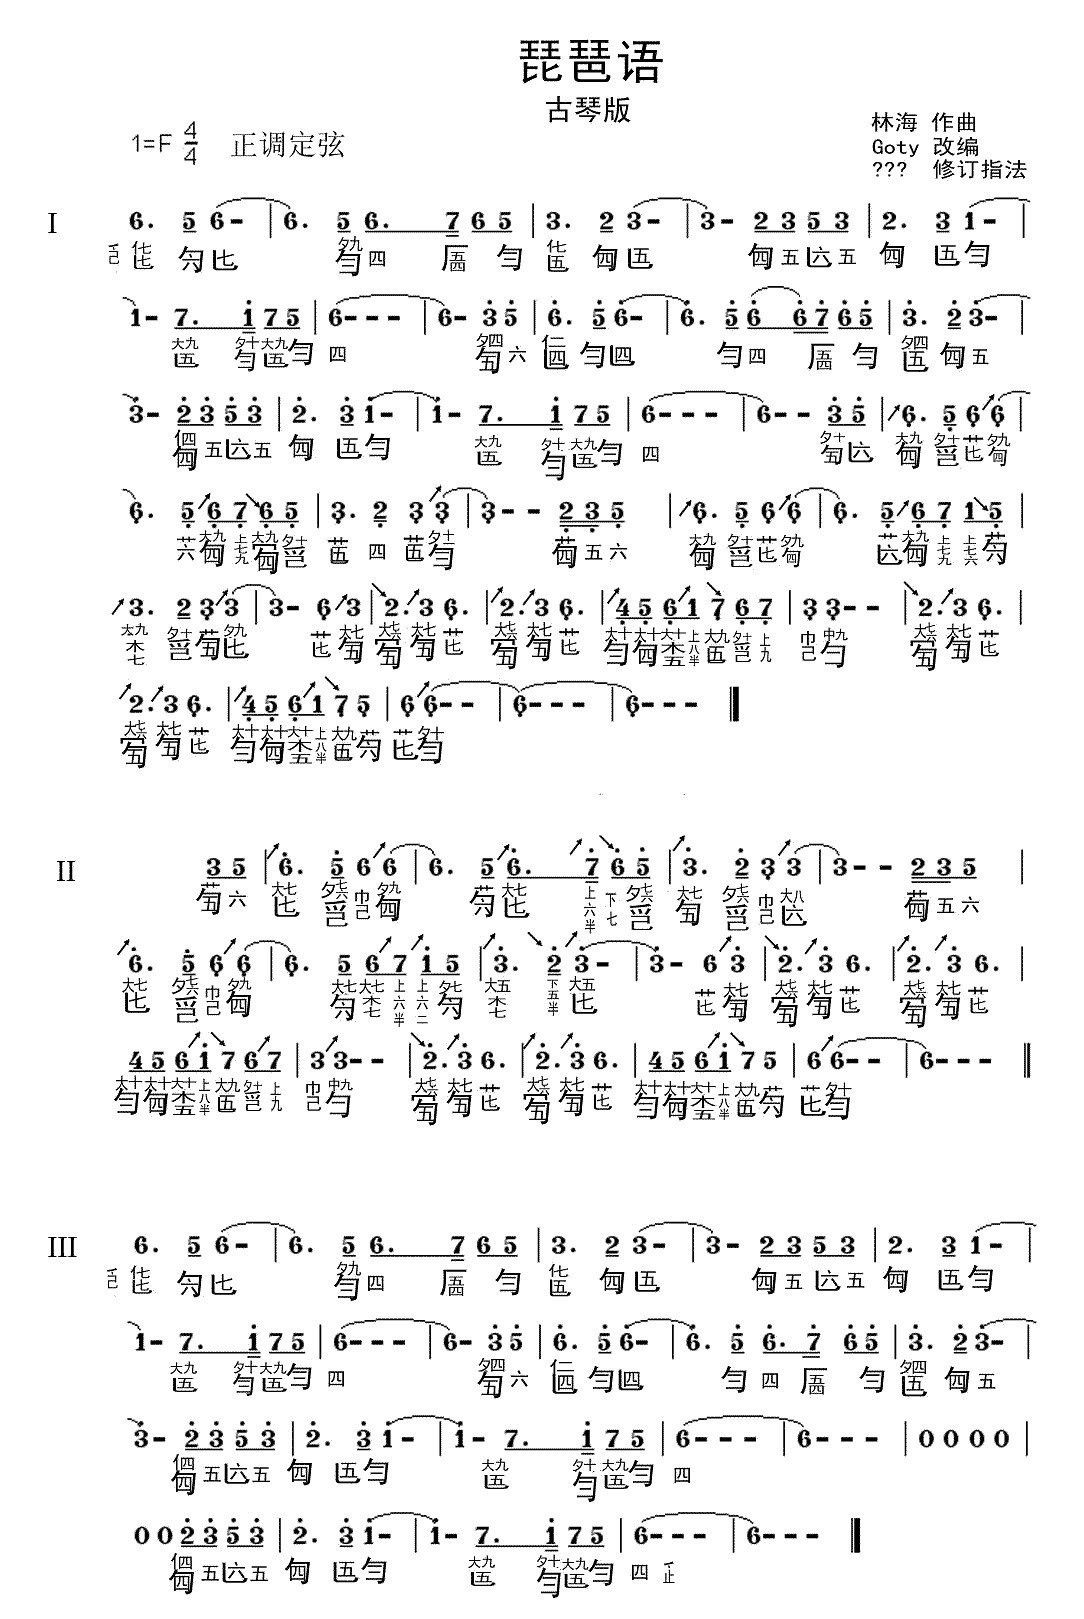 Pipa language (guqin)（guqin sheet music）